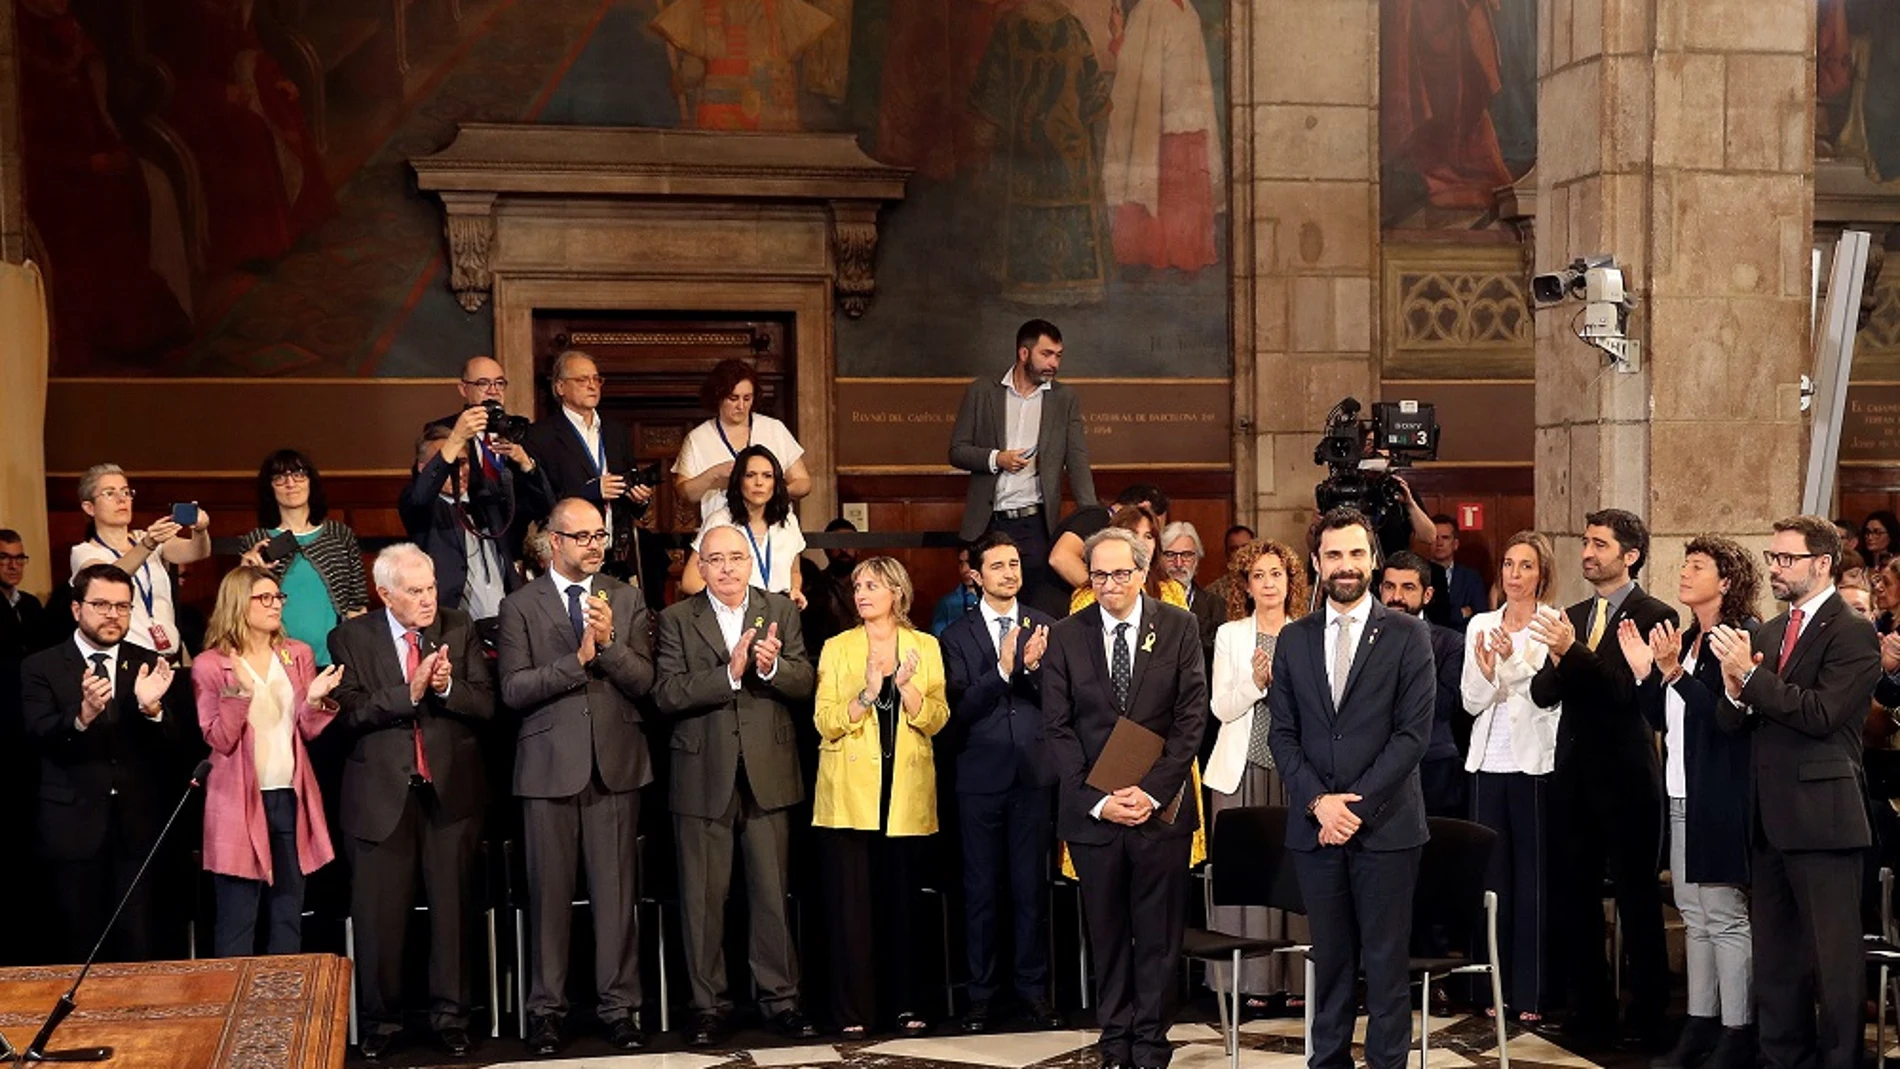 Torra y Torrent reciben el aplauso de los nuevos consellers del gobierno catalán a su llegada al acto de toma de posesion del nuevo Govern